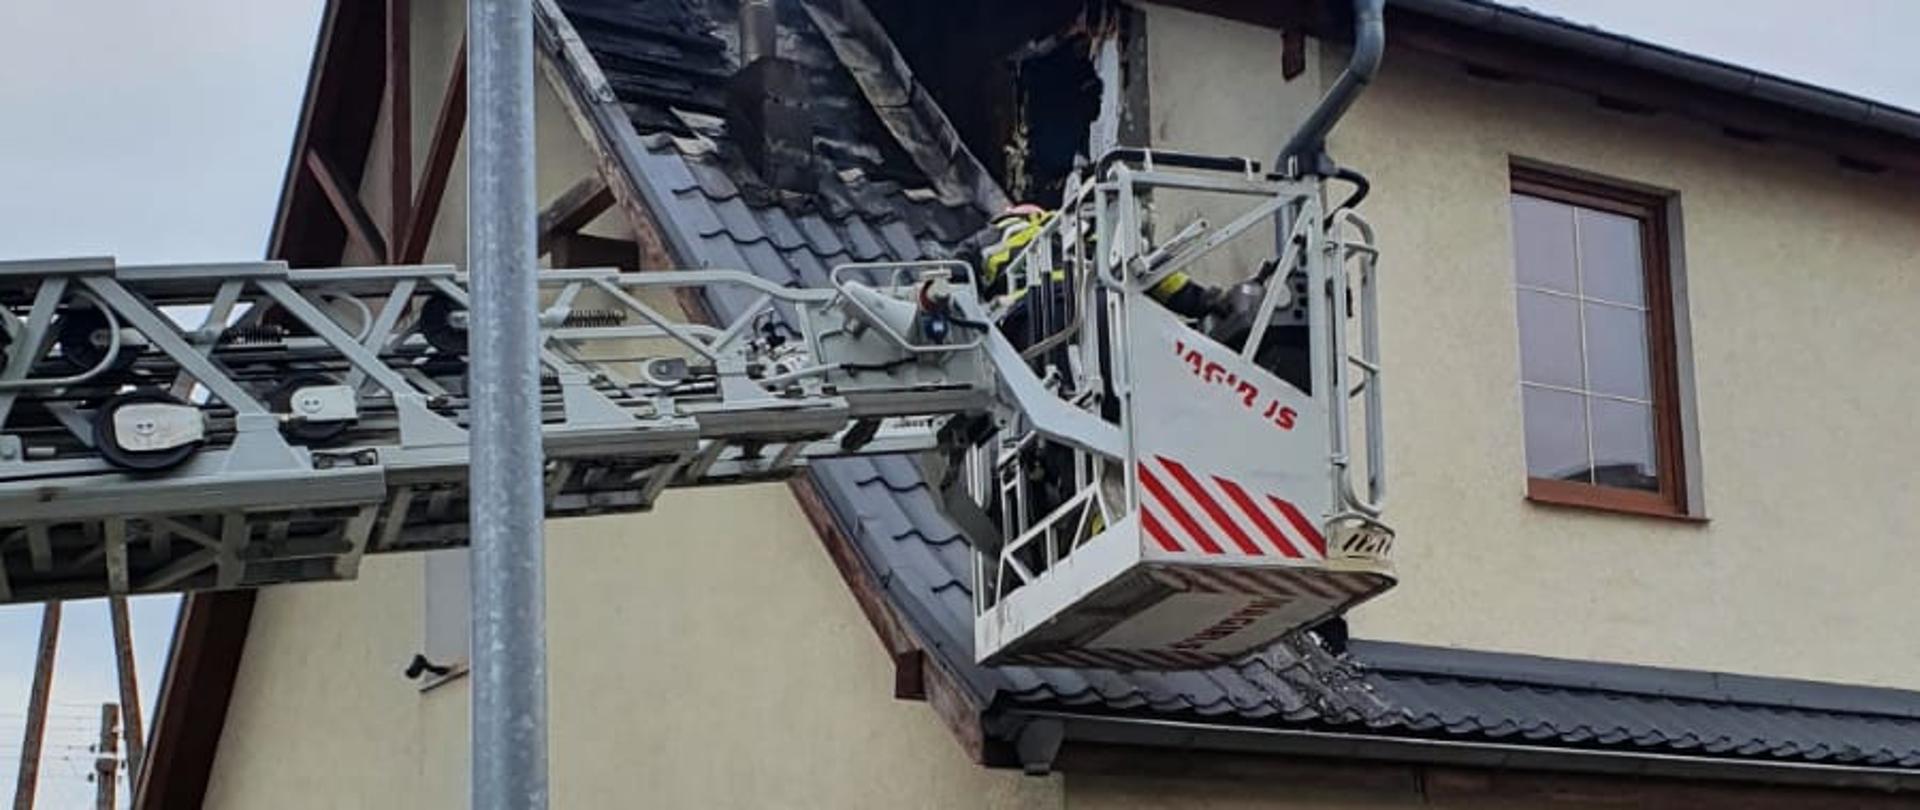 kosz drabiny pożarniczej nad dachem palącego się budynku otoczonego betonowym płotem, pofałdowane poszycie dachu